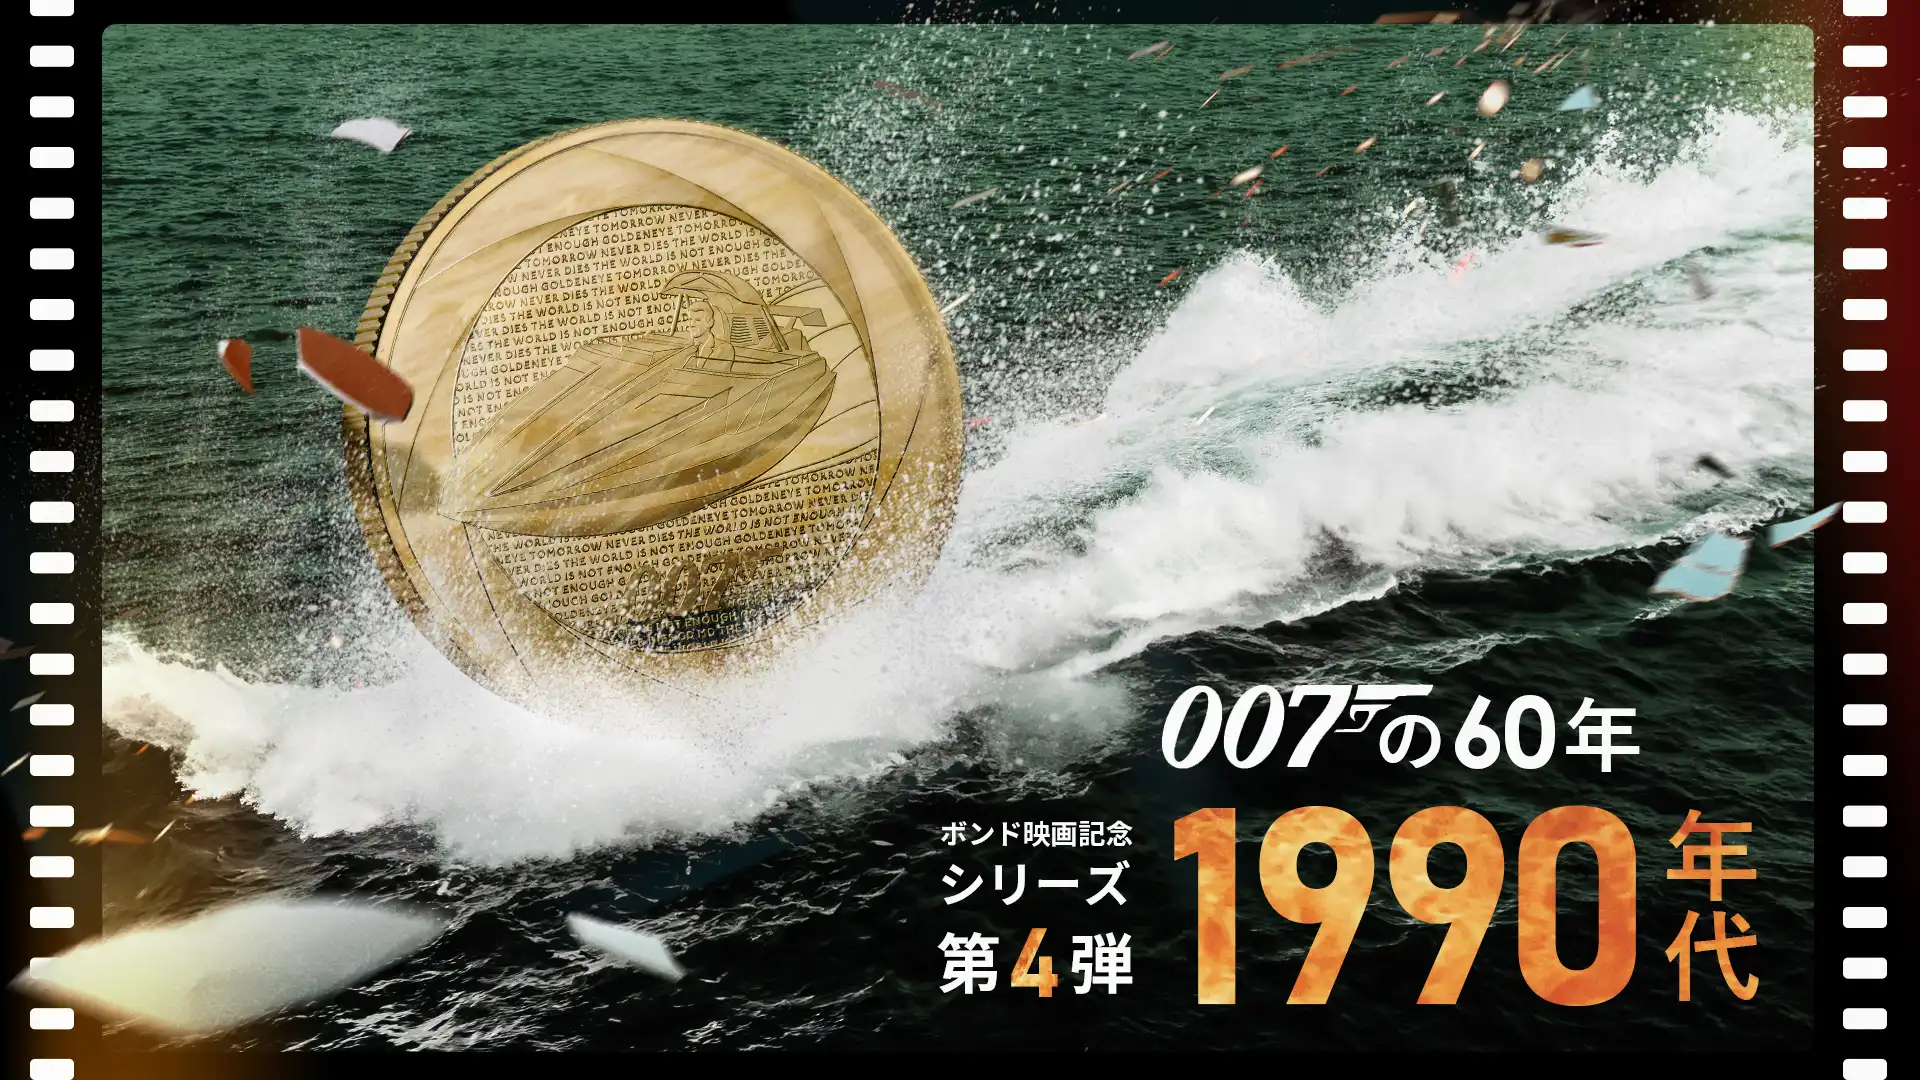 007シリーズ新作！ボンド映画記念コイン第4弾「1990年代」 発売